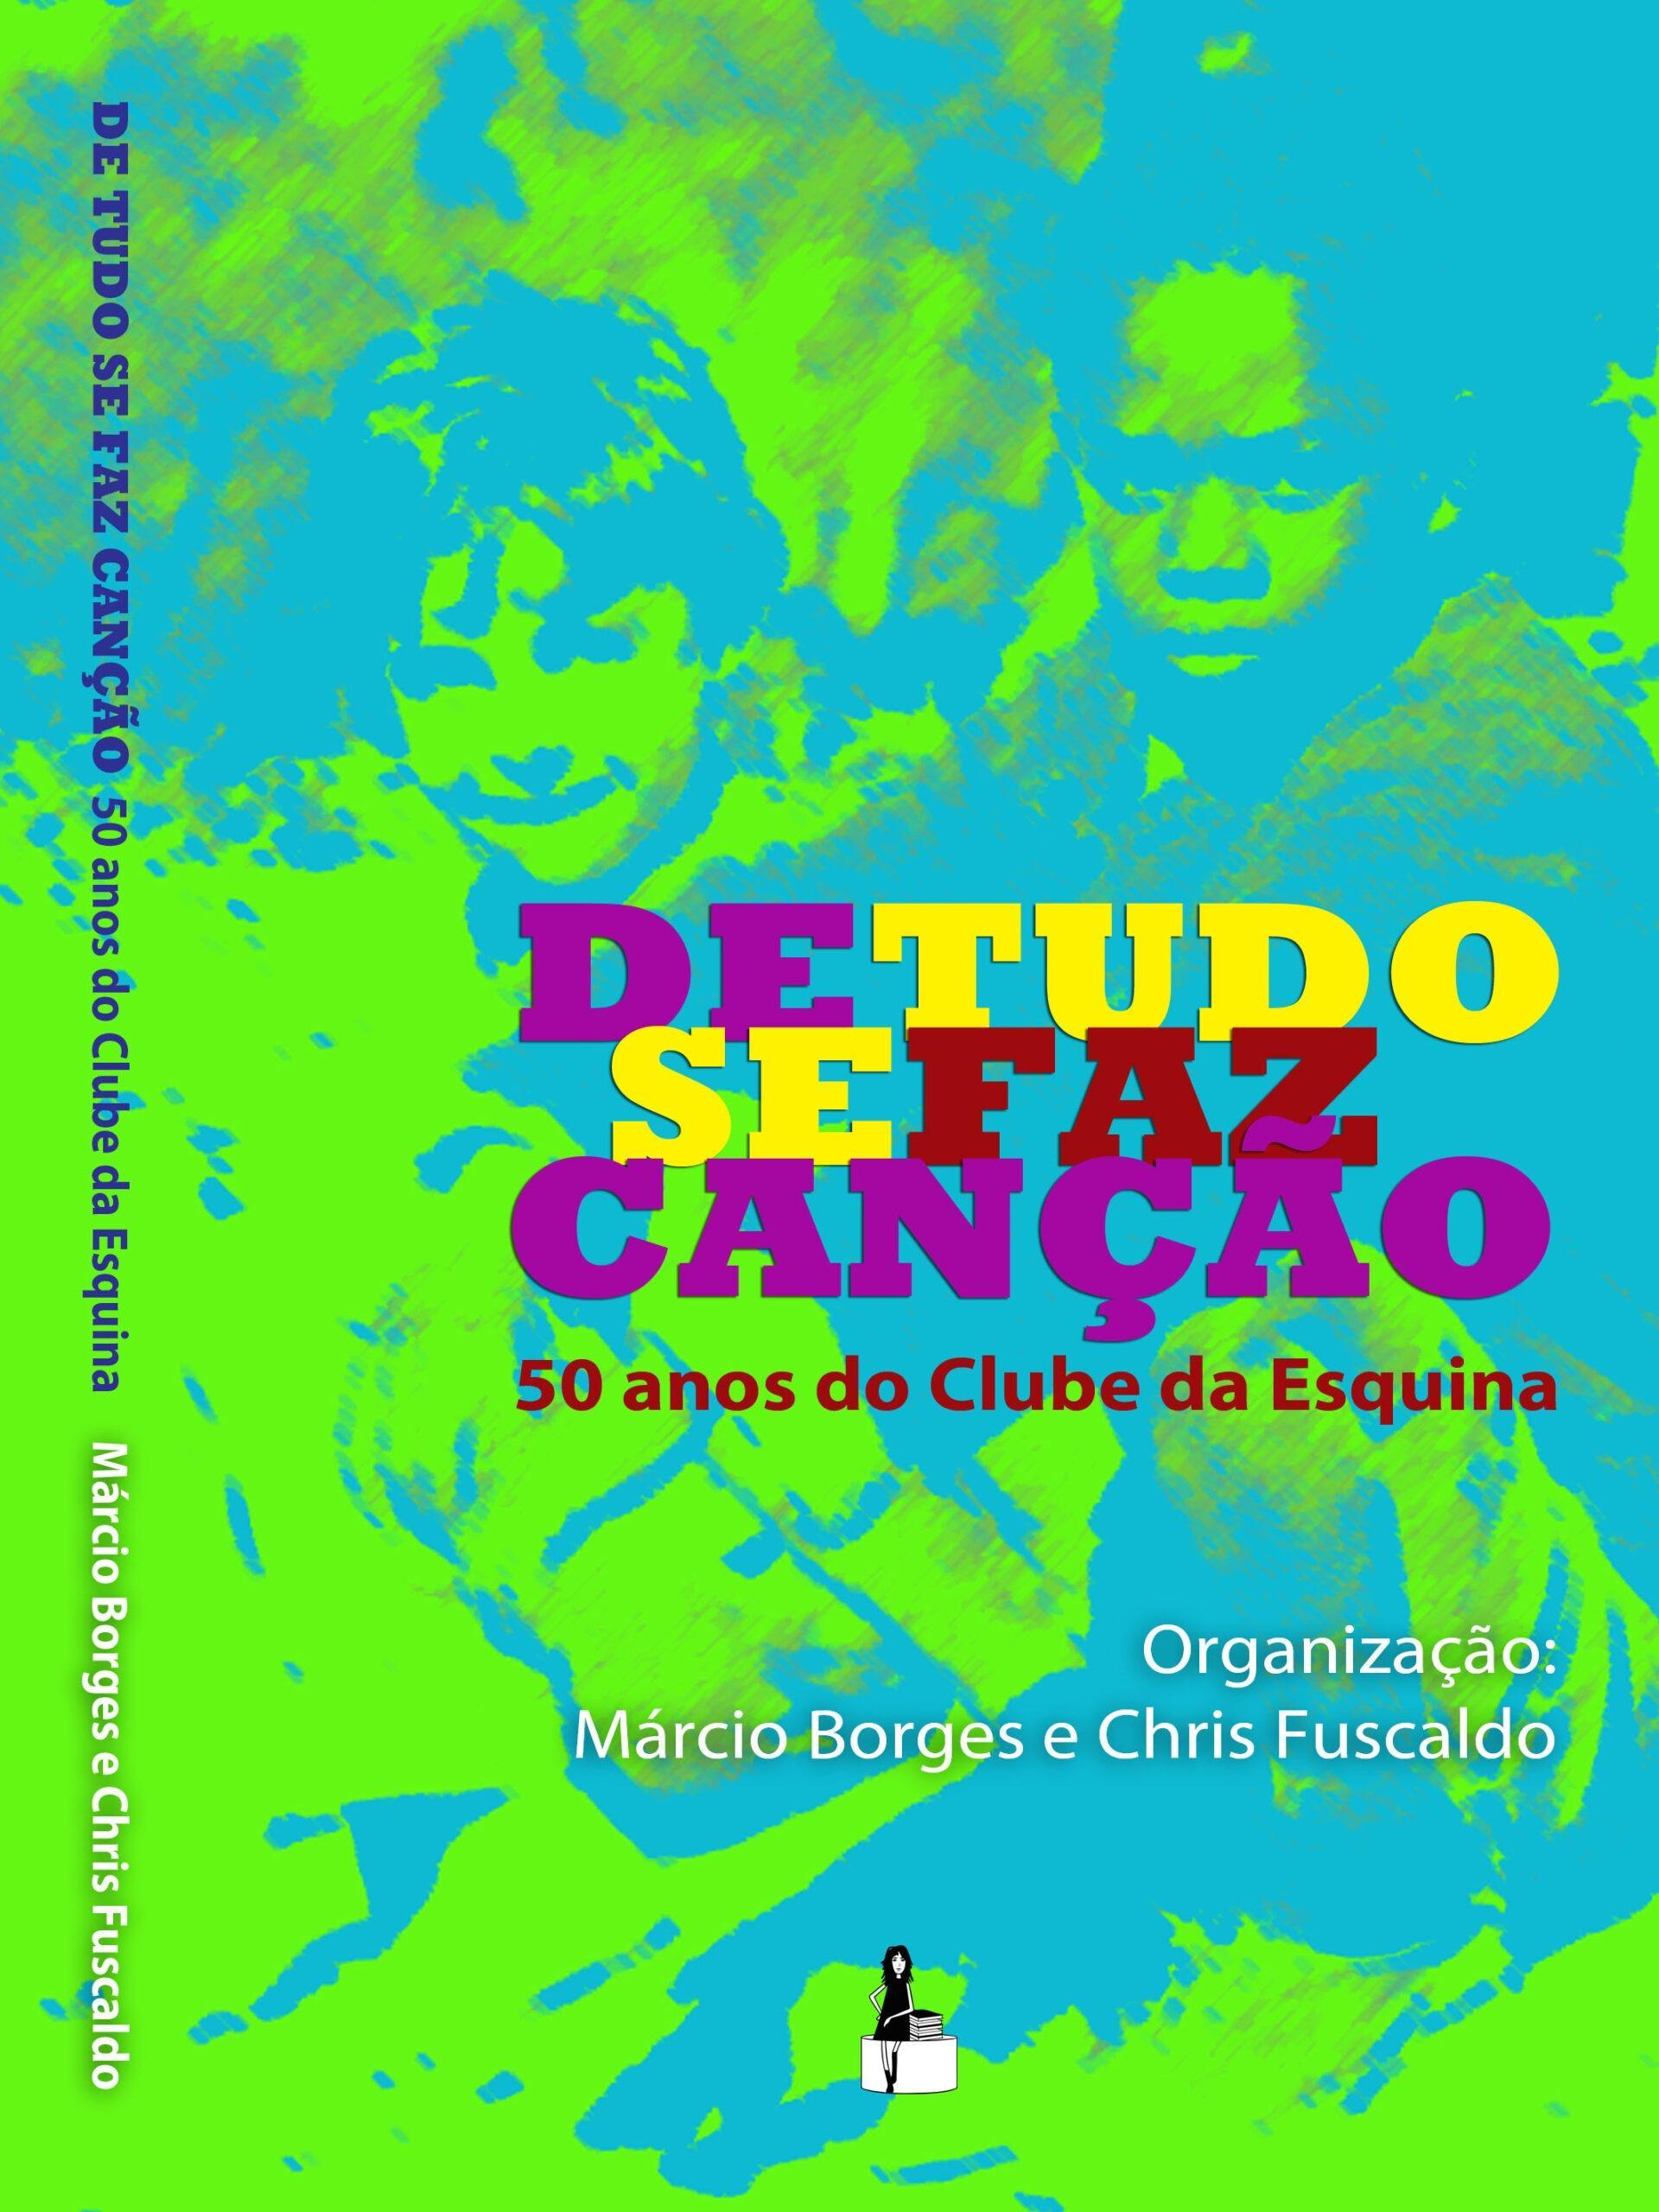 Está aberta a pré-venda do livro que vai celebrar os 50 anos do Clube da Esquina com texto de Chris Fuscaldo, Márcio Borges, Lô Borges e Milton Nascimento